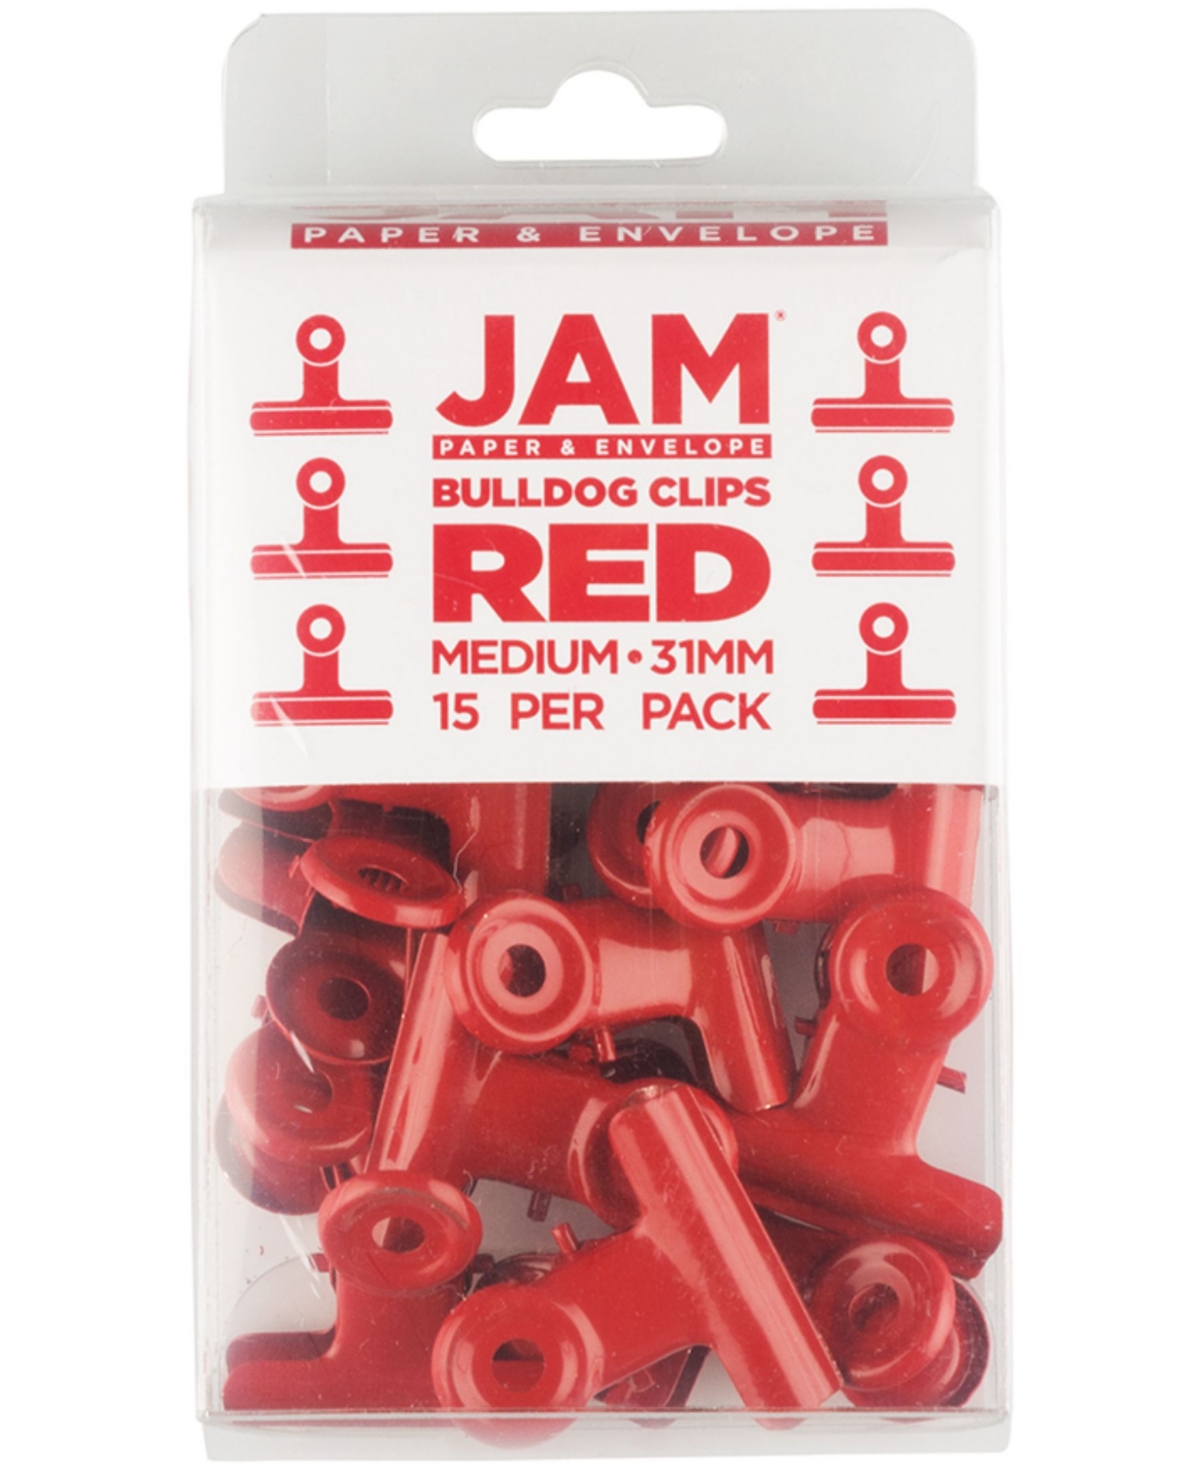 Jam Paper Metal Bulldog Clips In Red